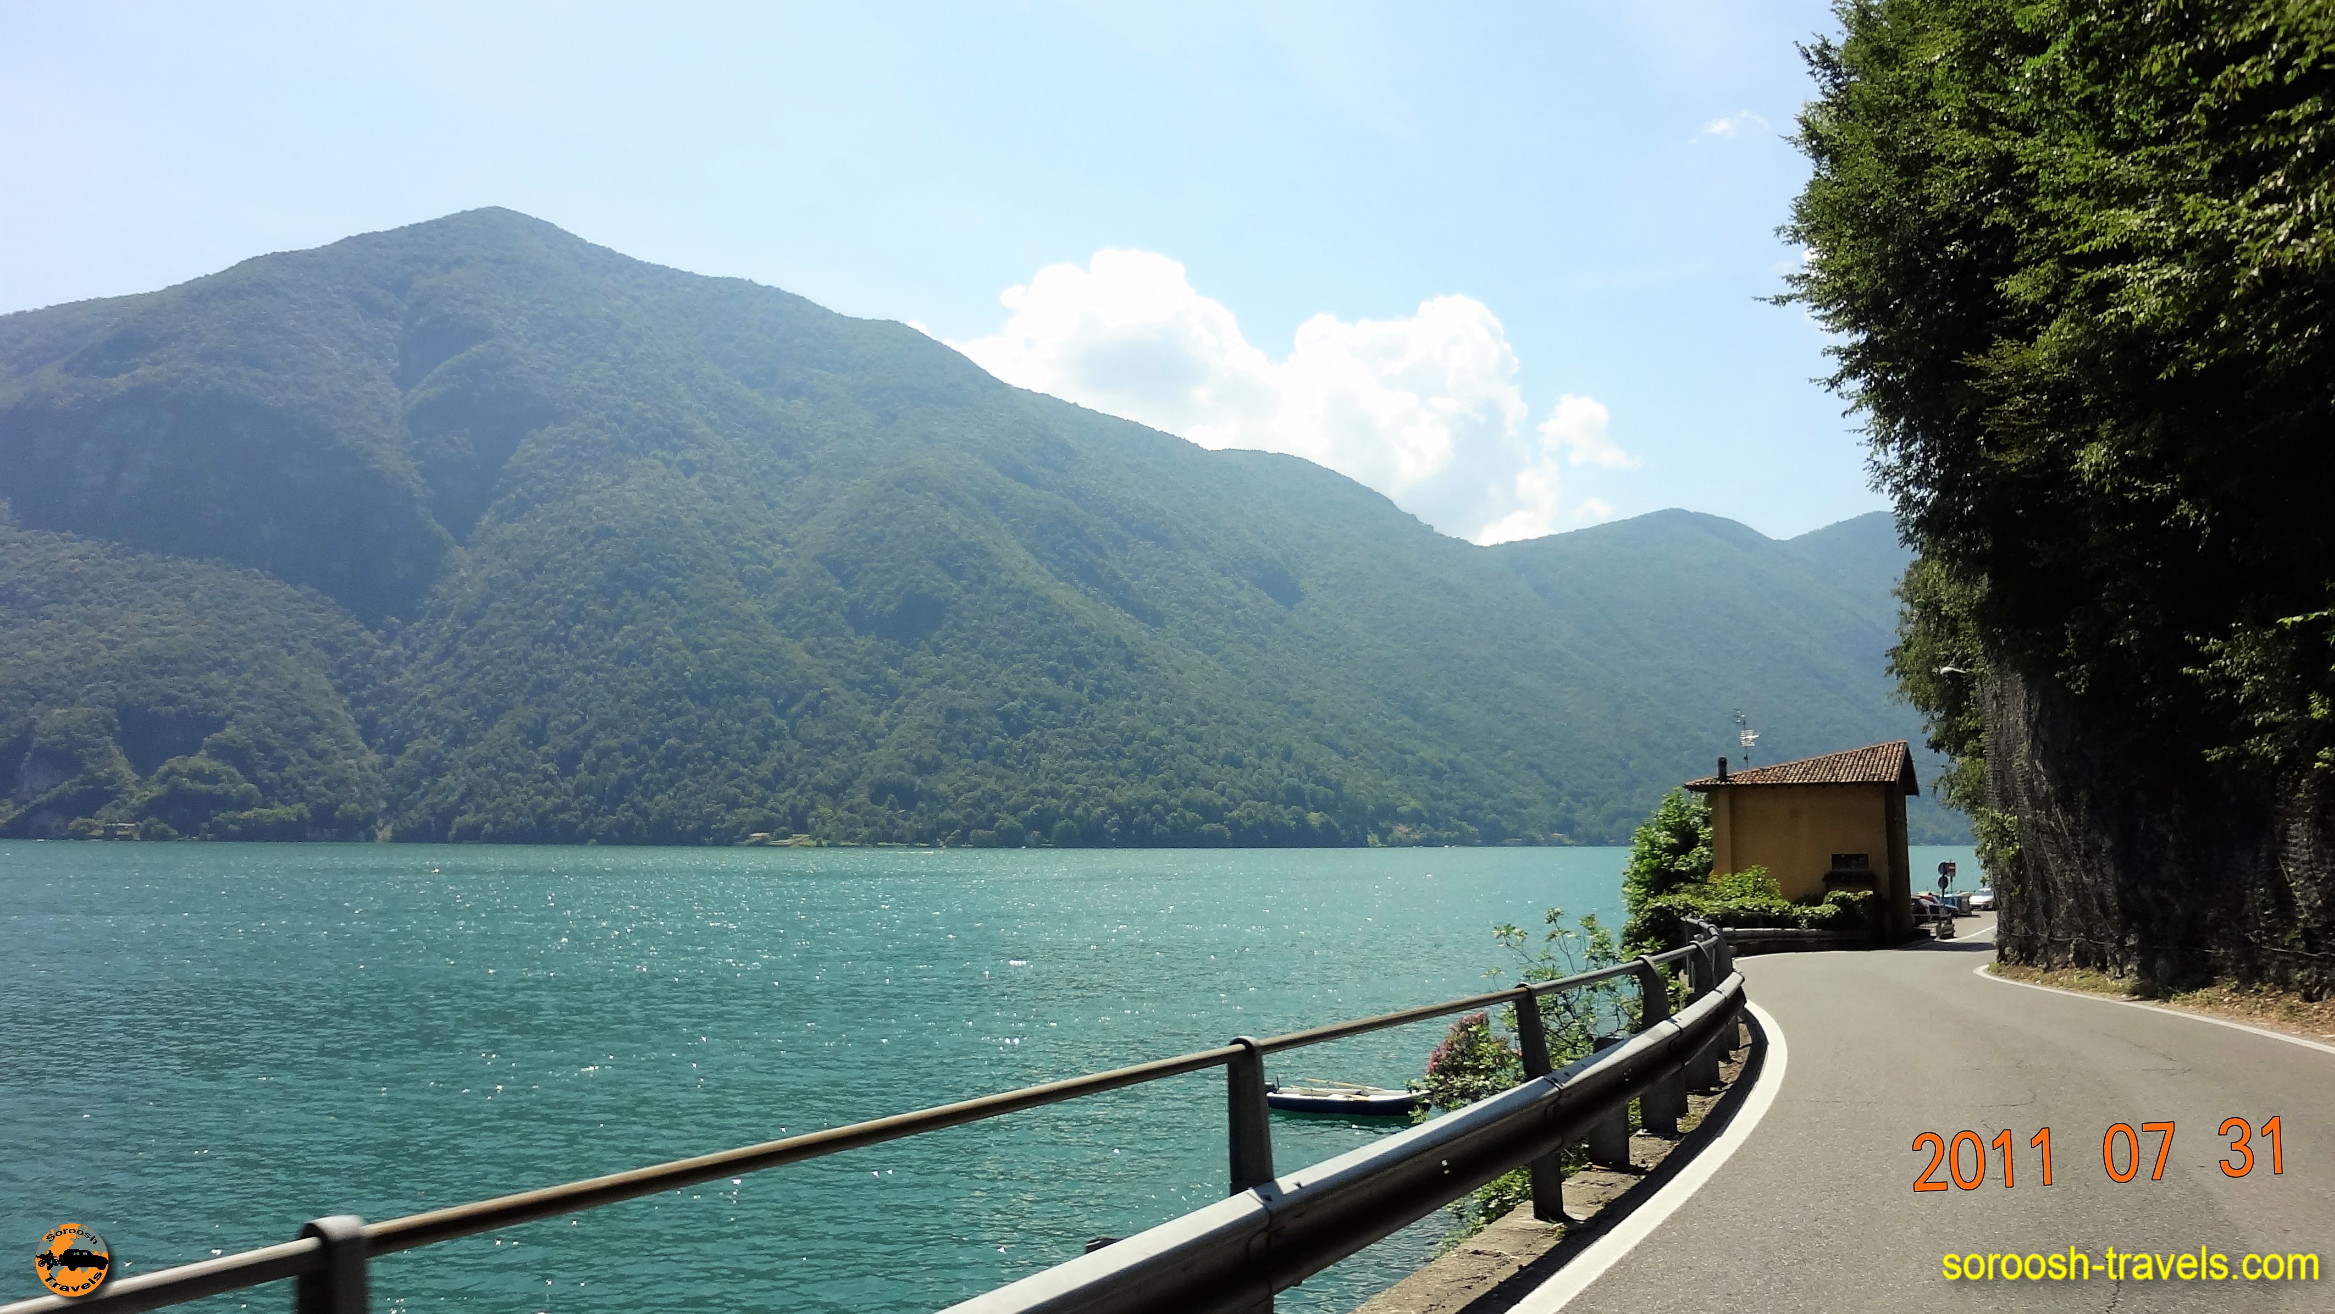 سفر به اروپا با اتوموبیل – تابستان ۱۳۹۰ – از ایتالیا به سوئیس